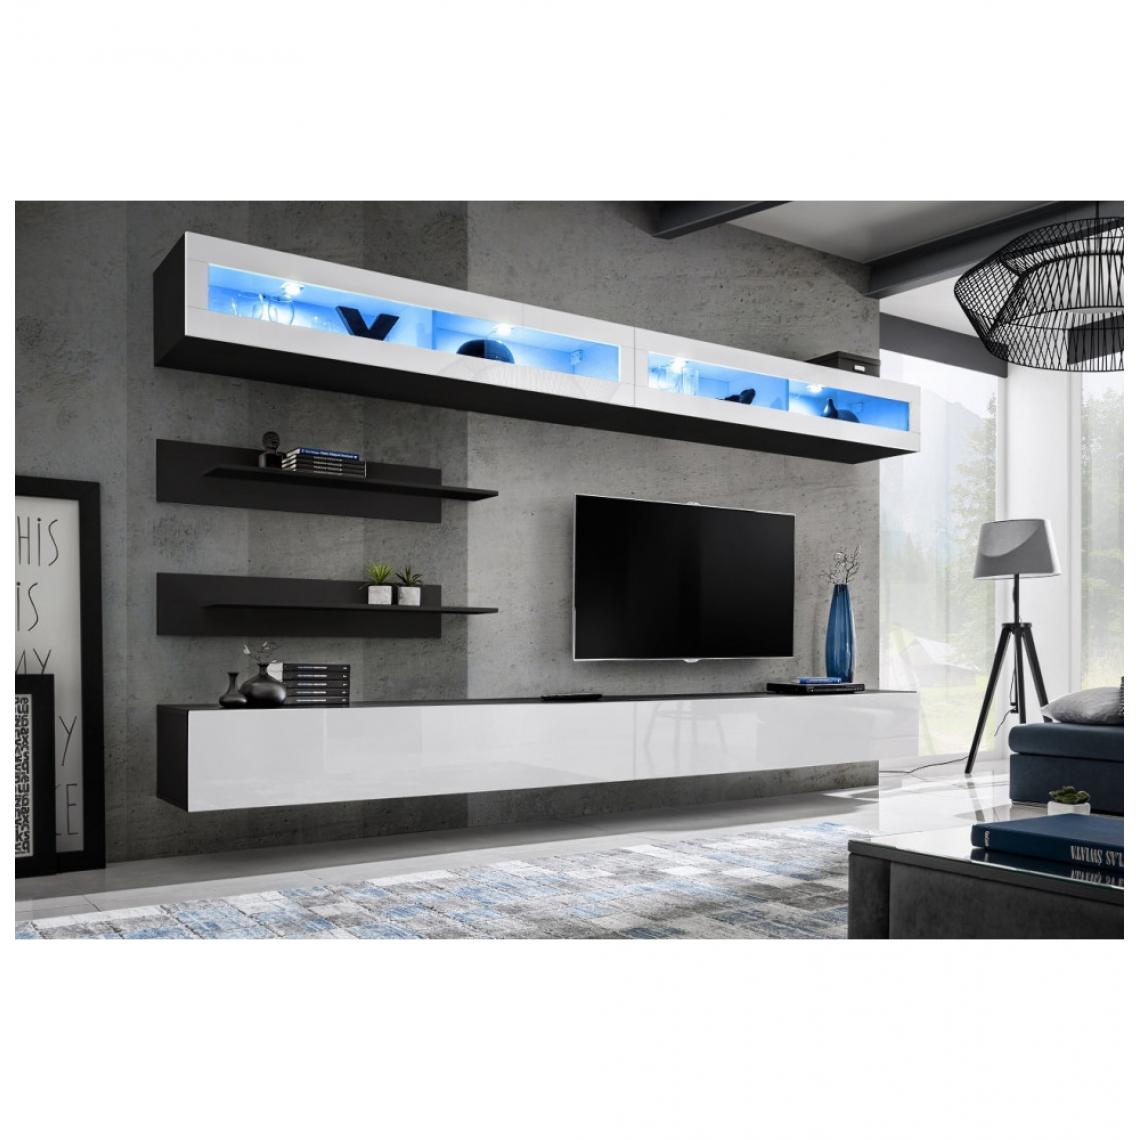 Ac-Deco - Ensemble mural - FLY I - 2 rangements LED - 2 meubles TV - 2 étagères - Noir et blanc - Modèle 1 - Meubles TV, Hi-Fi